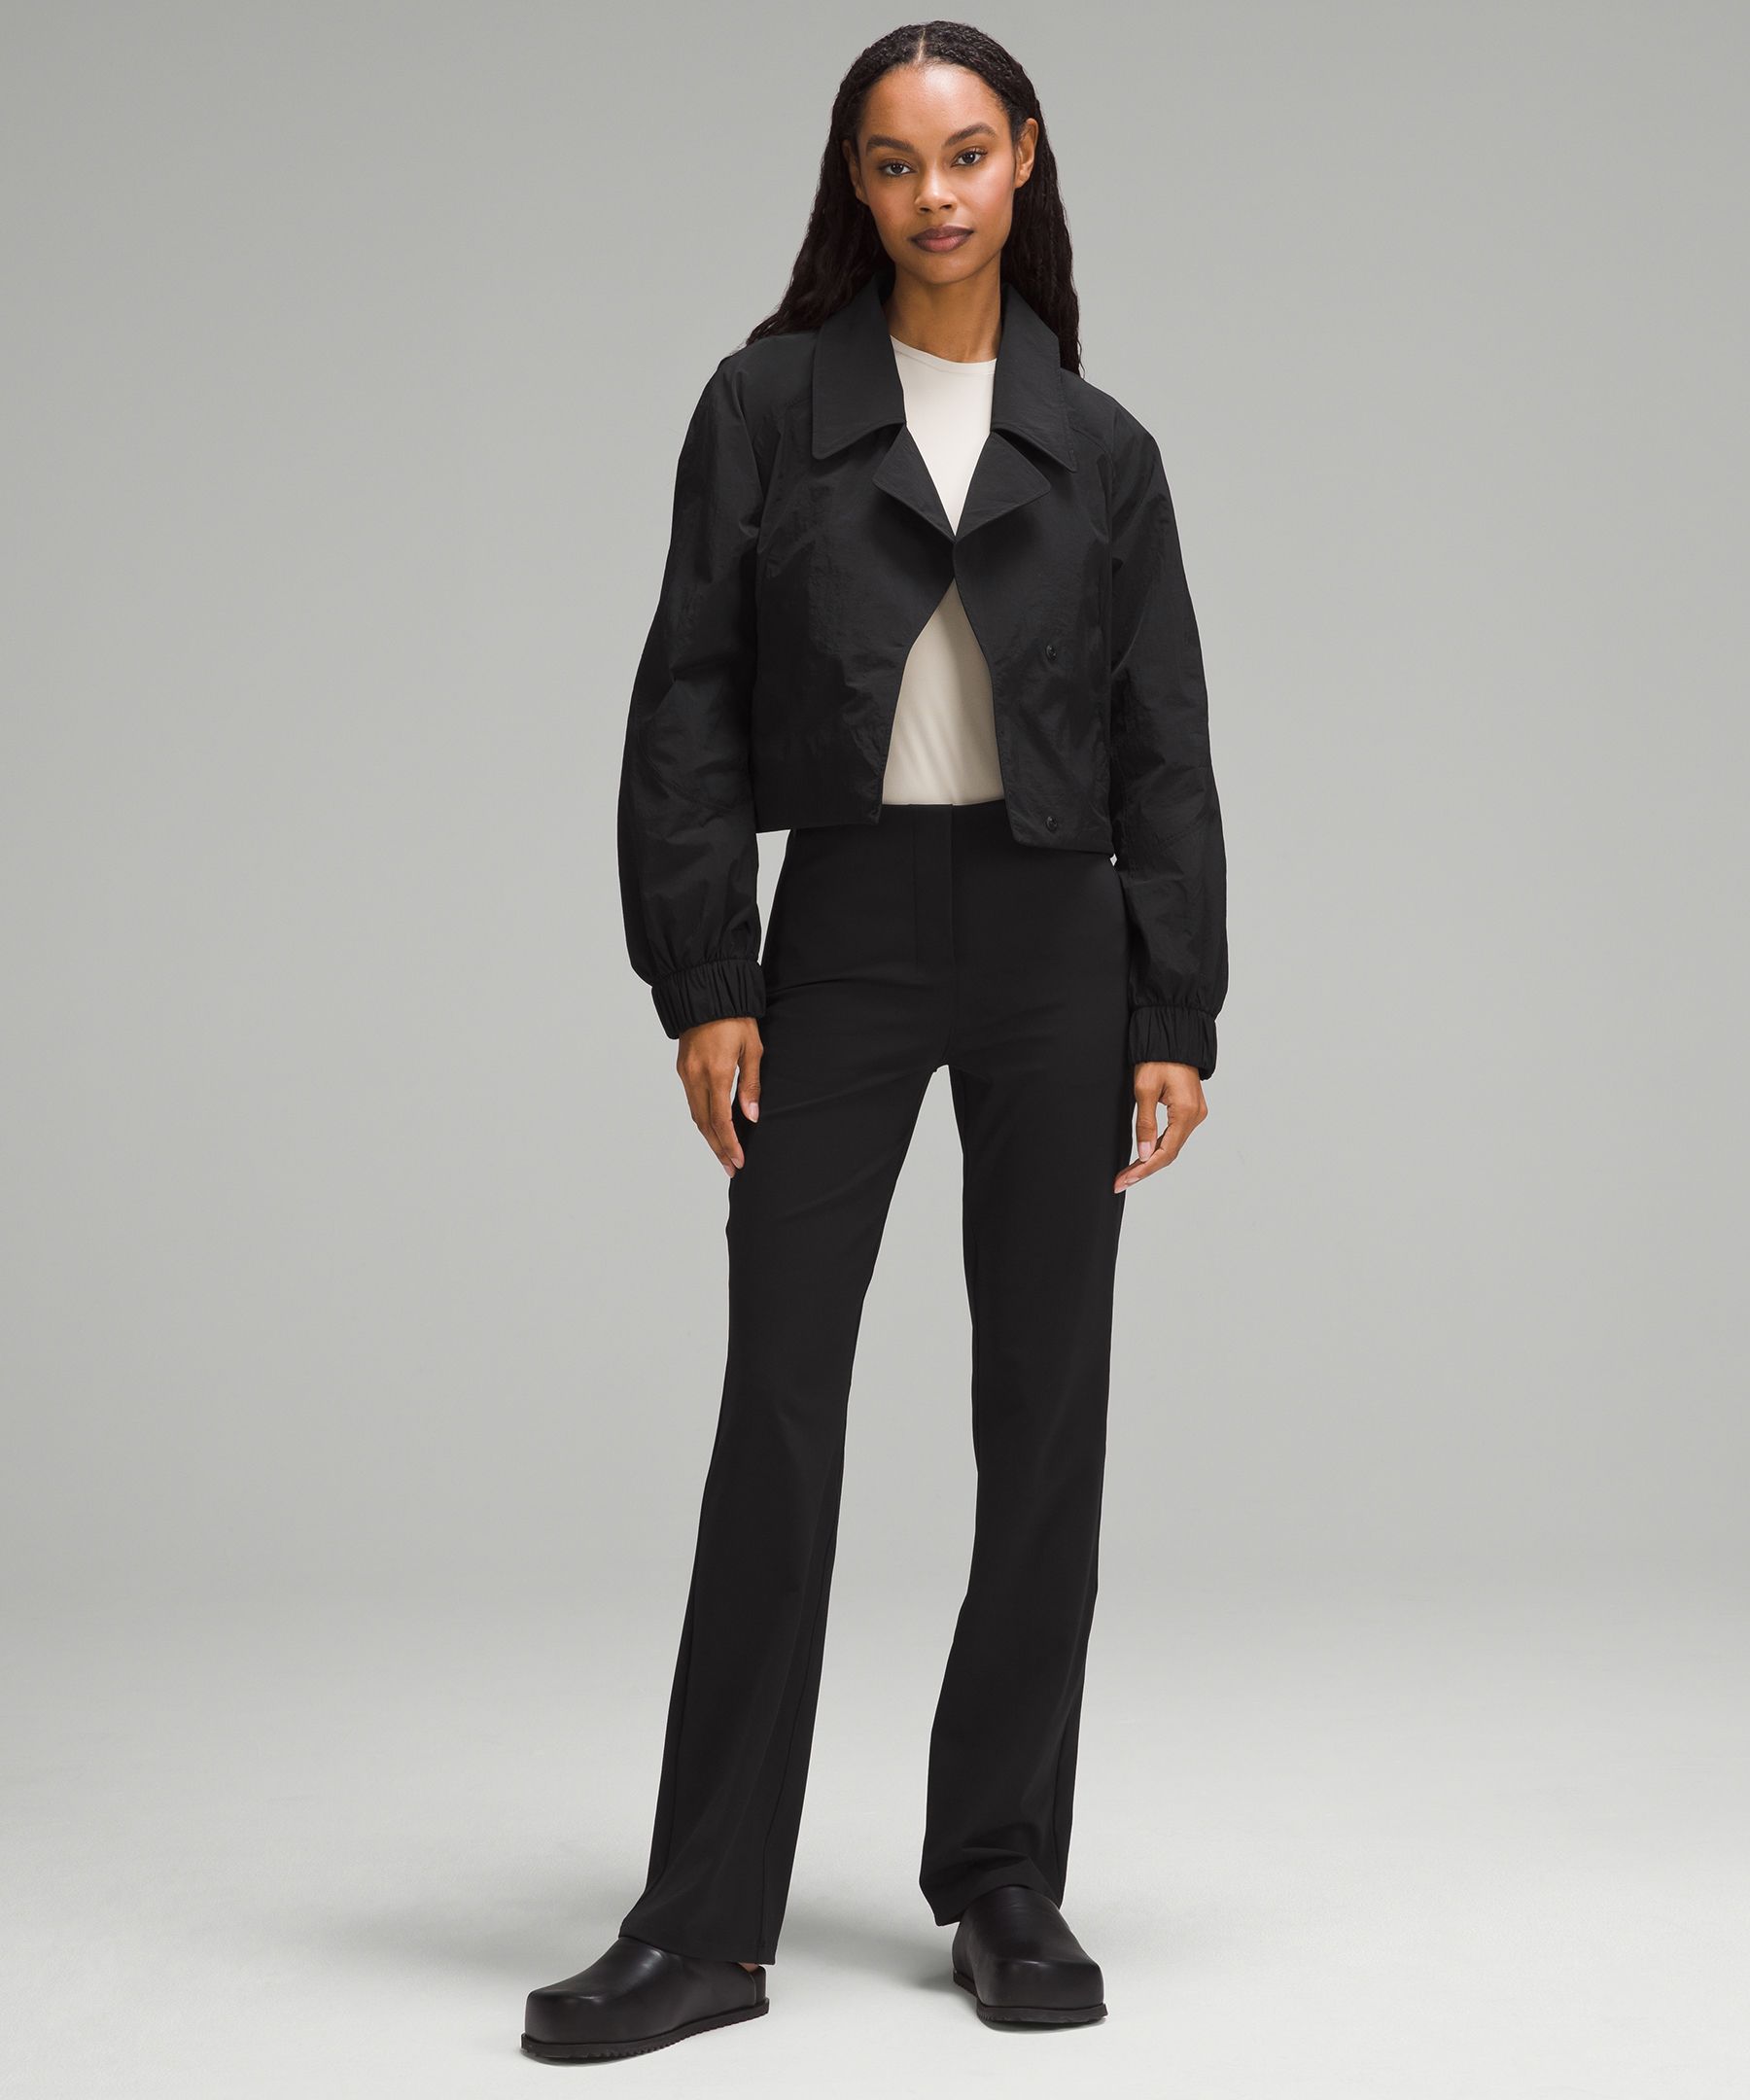 lululemon athletica, Jackets & Coats, Lululemon Jacket Minimalist Hoodie  Full Zip Black Women Athletic Size 2